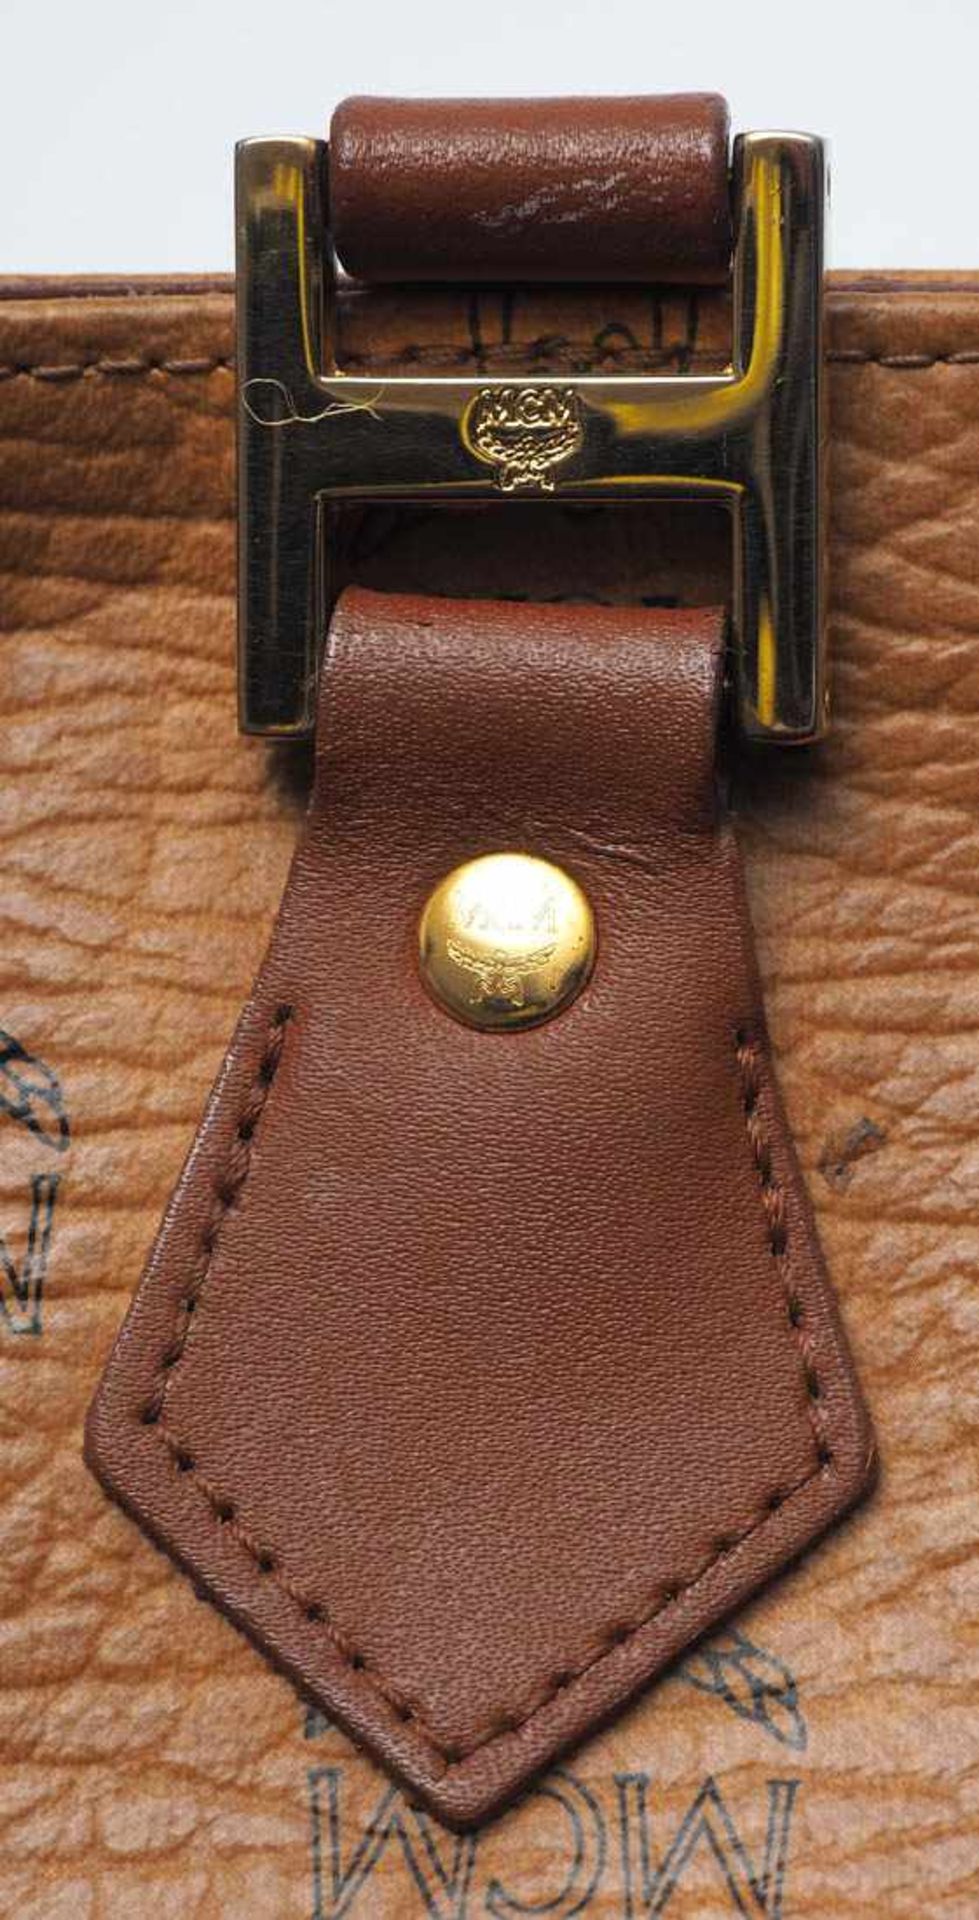 Handtasche, MCM Helles Leder, Beschläge aus vergoldetem Metall. Numeriert 17120. 25x31cm. Mit - Bild 4 aus 8